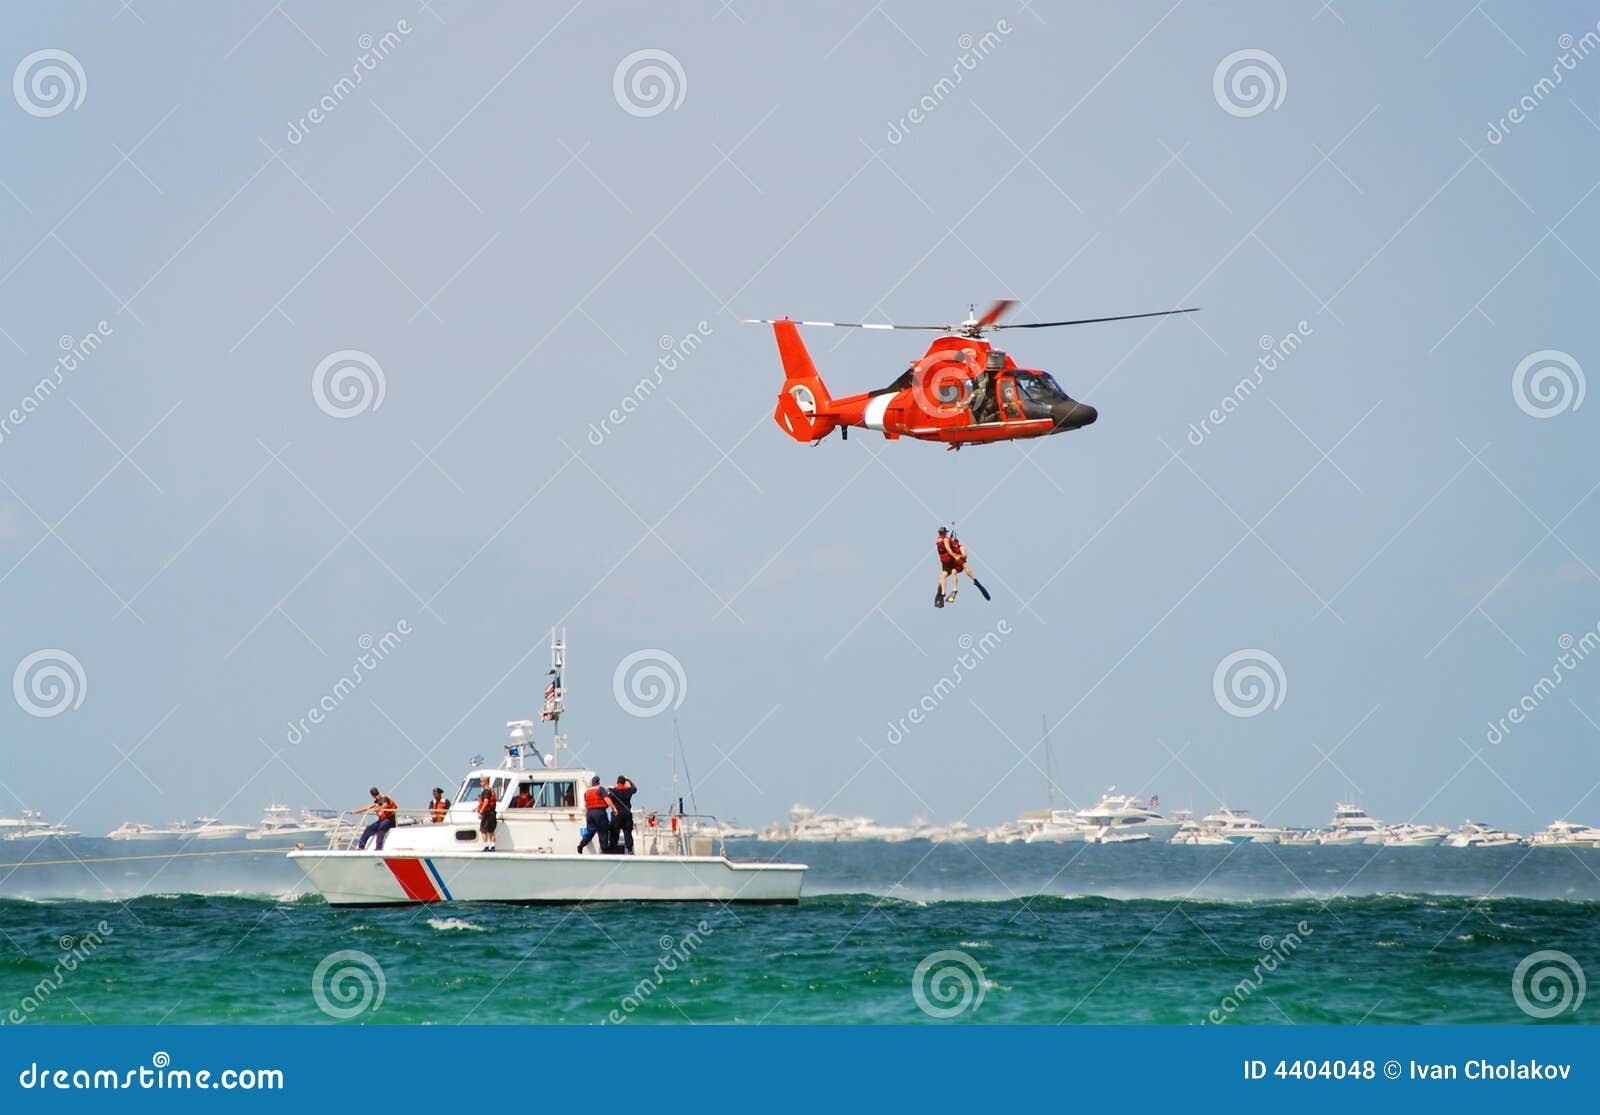 coast guard rescue